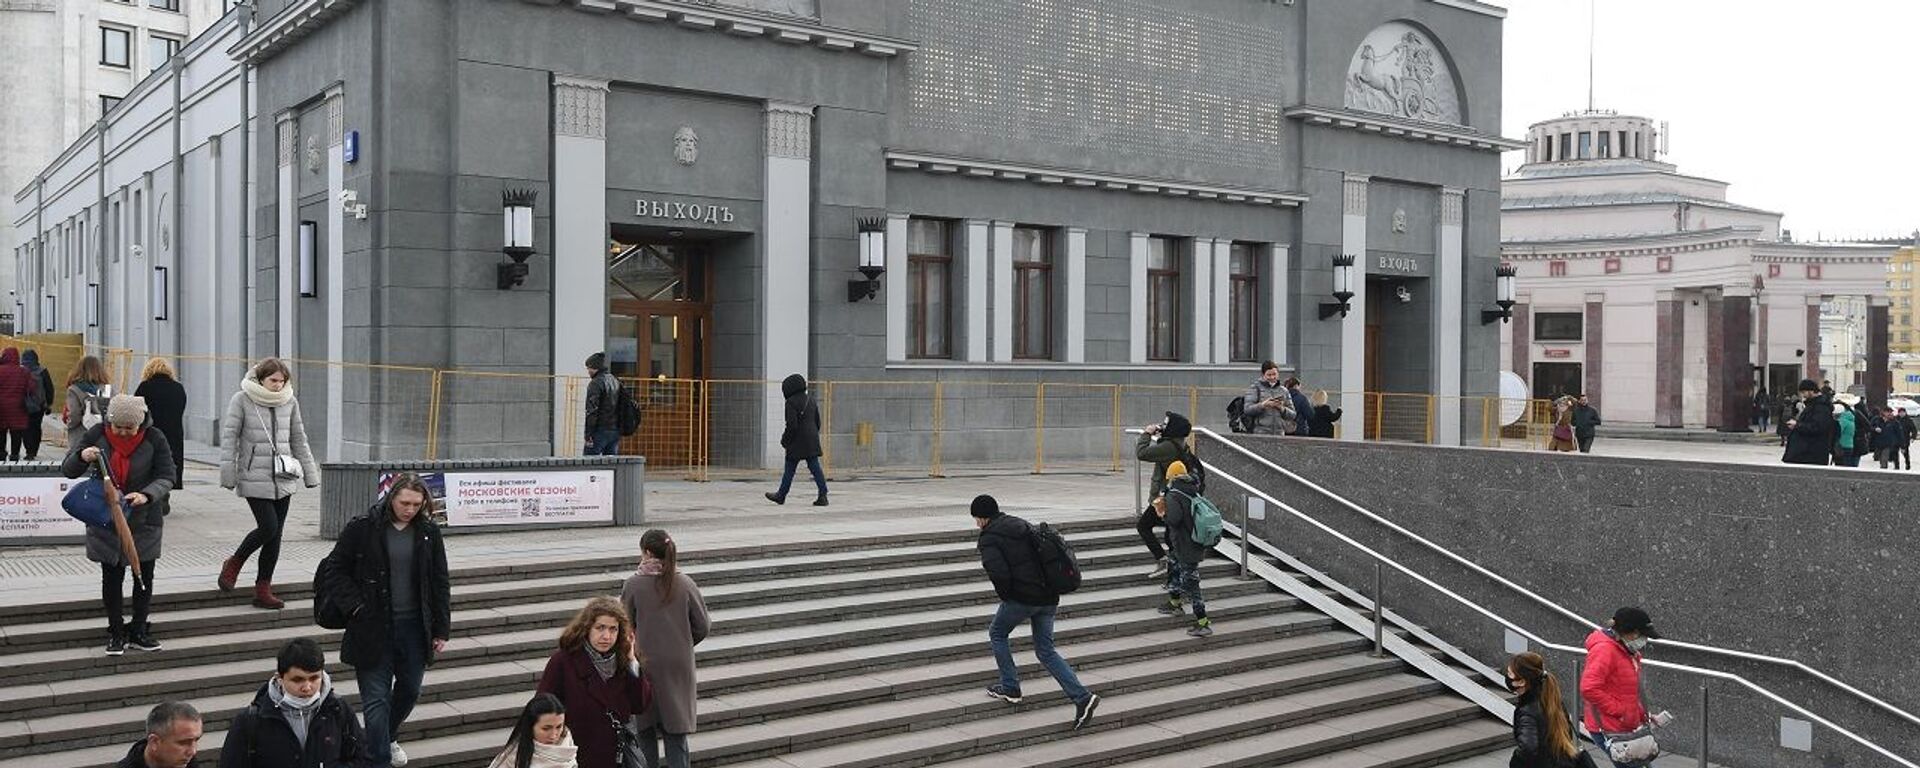 سينما خودوزيسفيني بعد ترميمها وهي أقدم سينما في موسكو تأسست في عام 1909، روسيا - سبوتنيك عربي, 1920, 01.04.2022